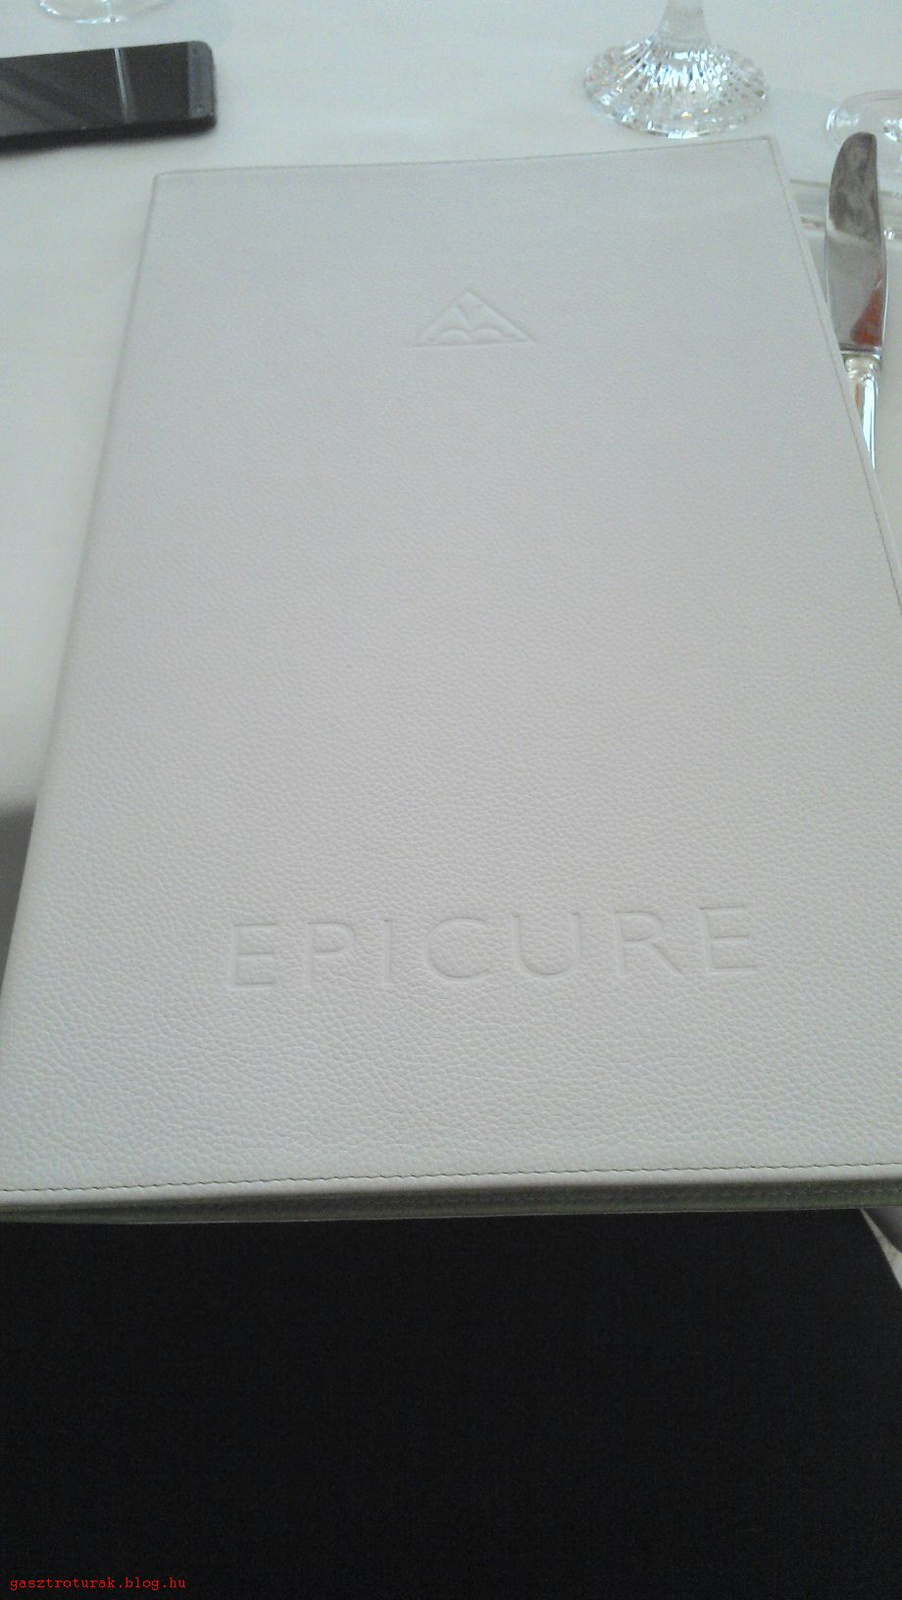 Epicure010